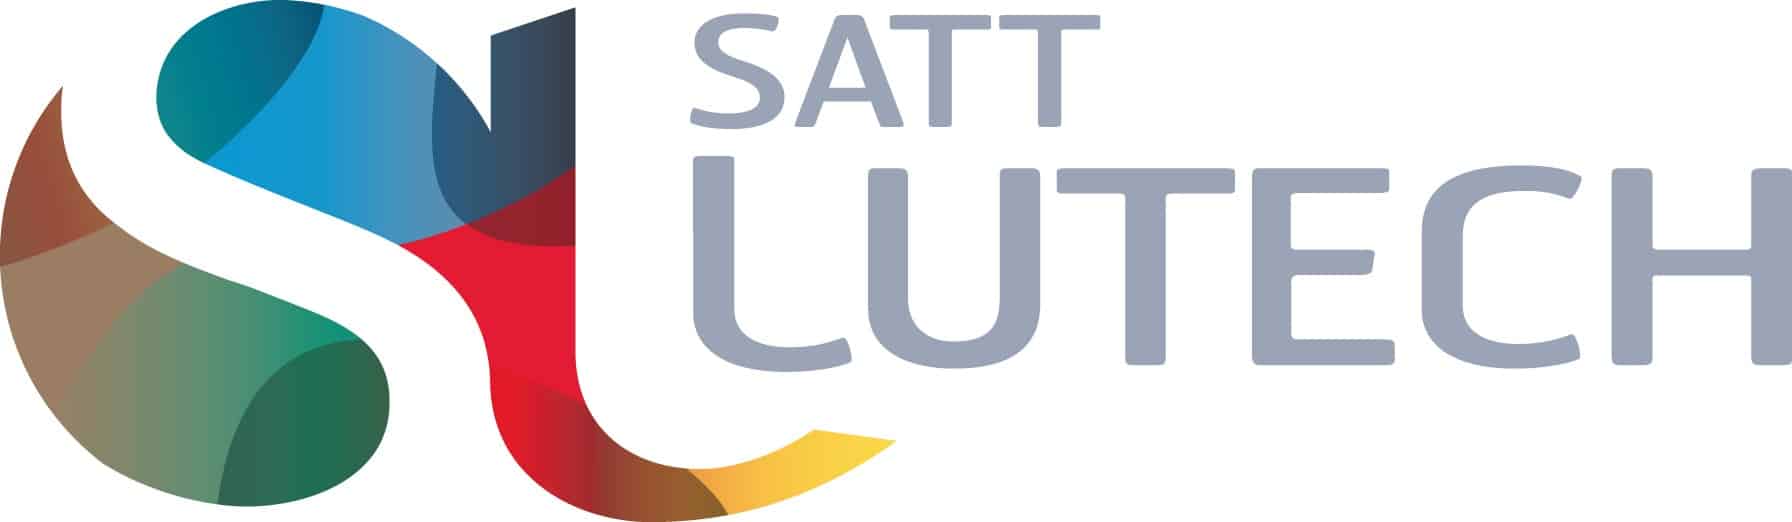 Résultat de recherche d'images pour "satt lutech"